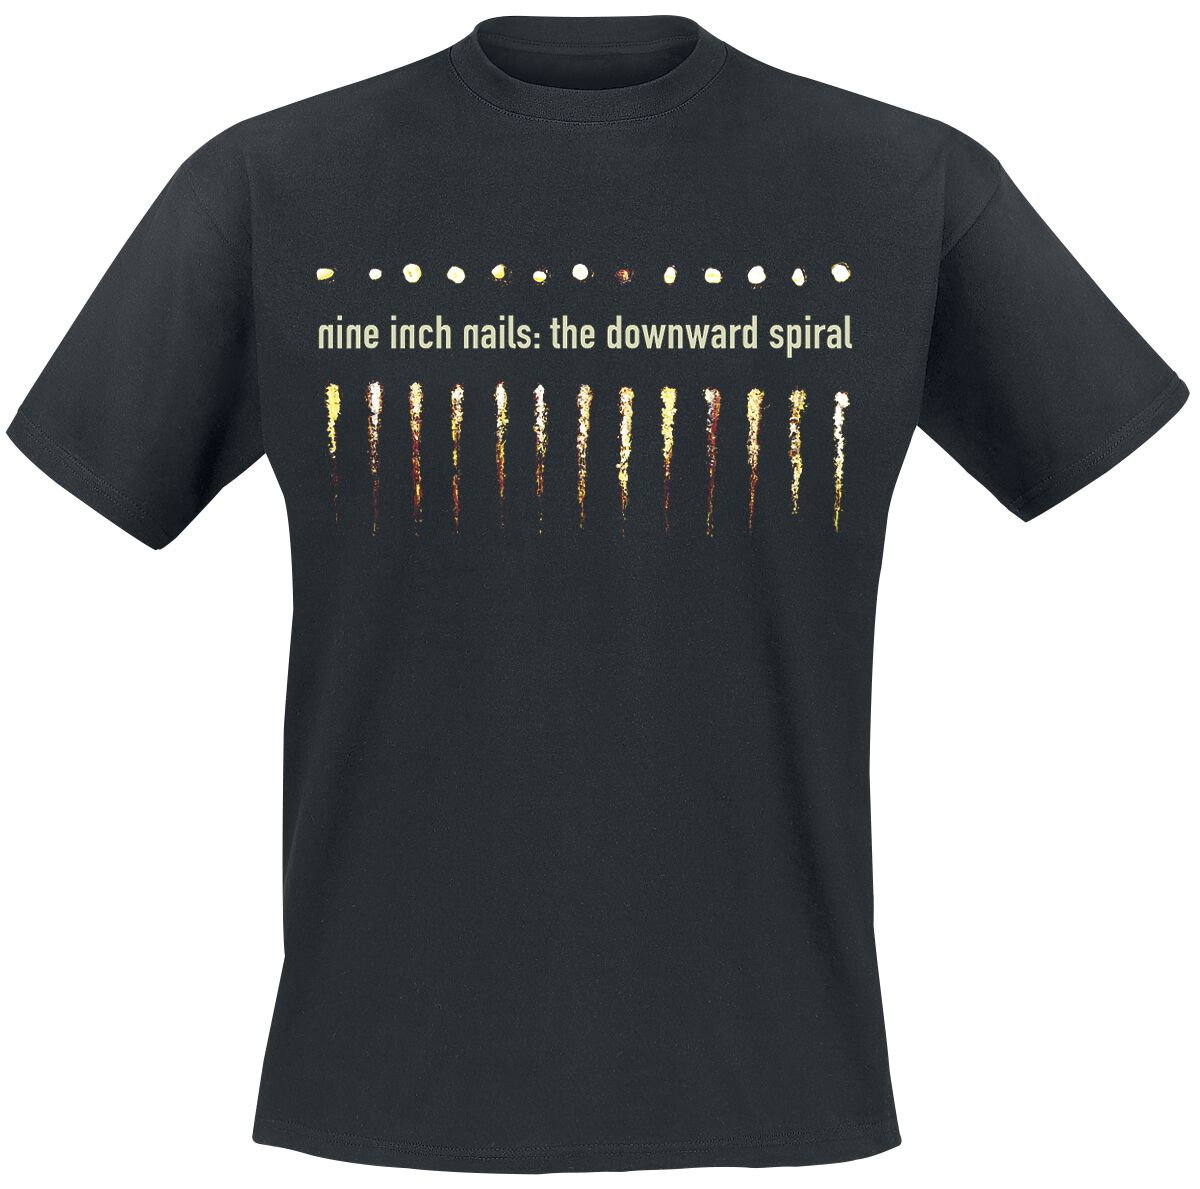 nine inch nails t-shirt - downward spiral - s bis xxl - fÃ¼r mÃ¤nner - grÃ¶ÃŸe xl - - lizenziertes merchandise! schwarz